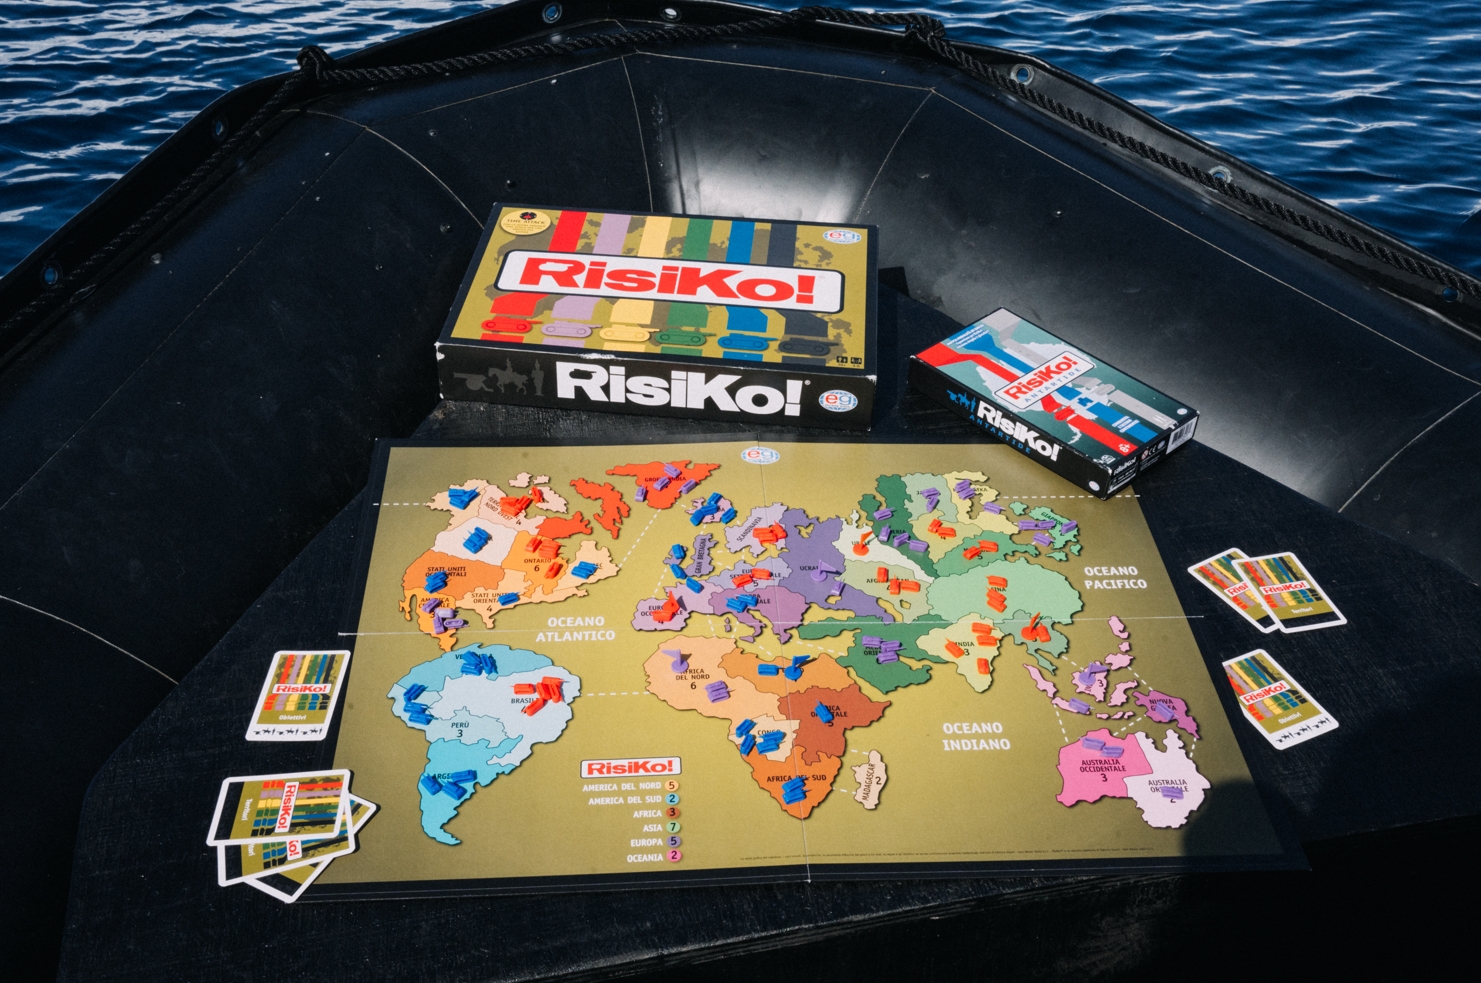 la scatole di risiko e risiko antartide viaggiano con marcello ascani in barca - nerdface